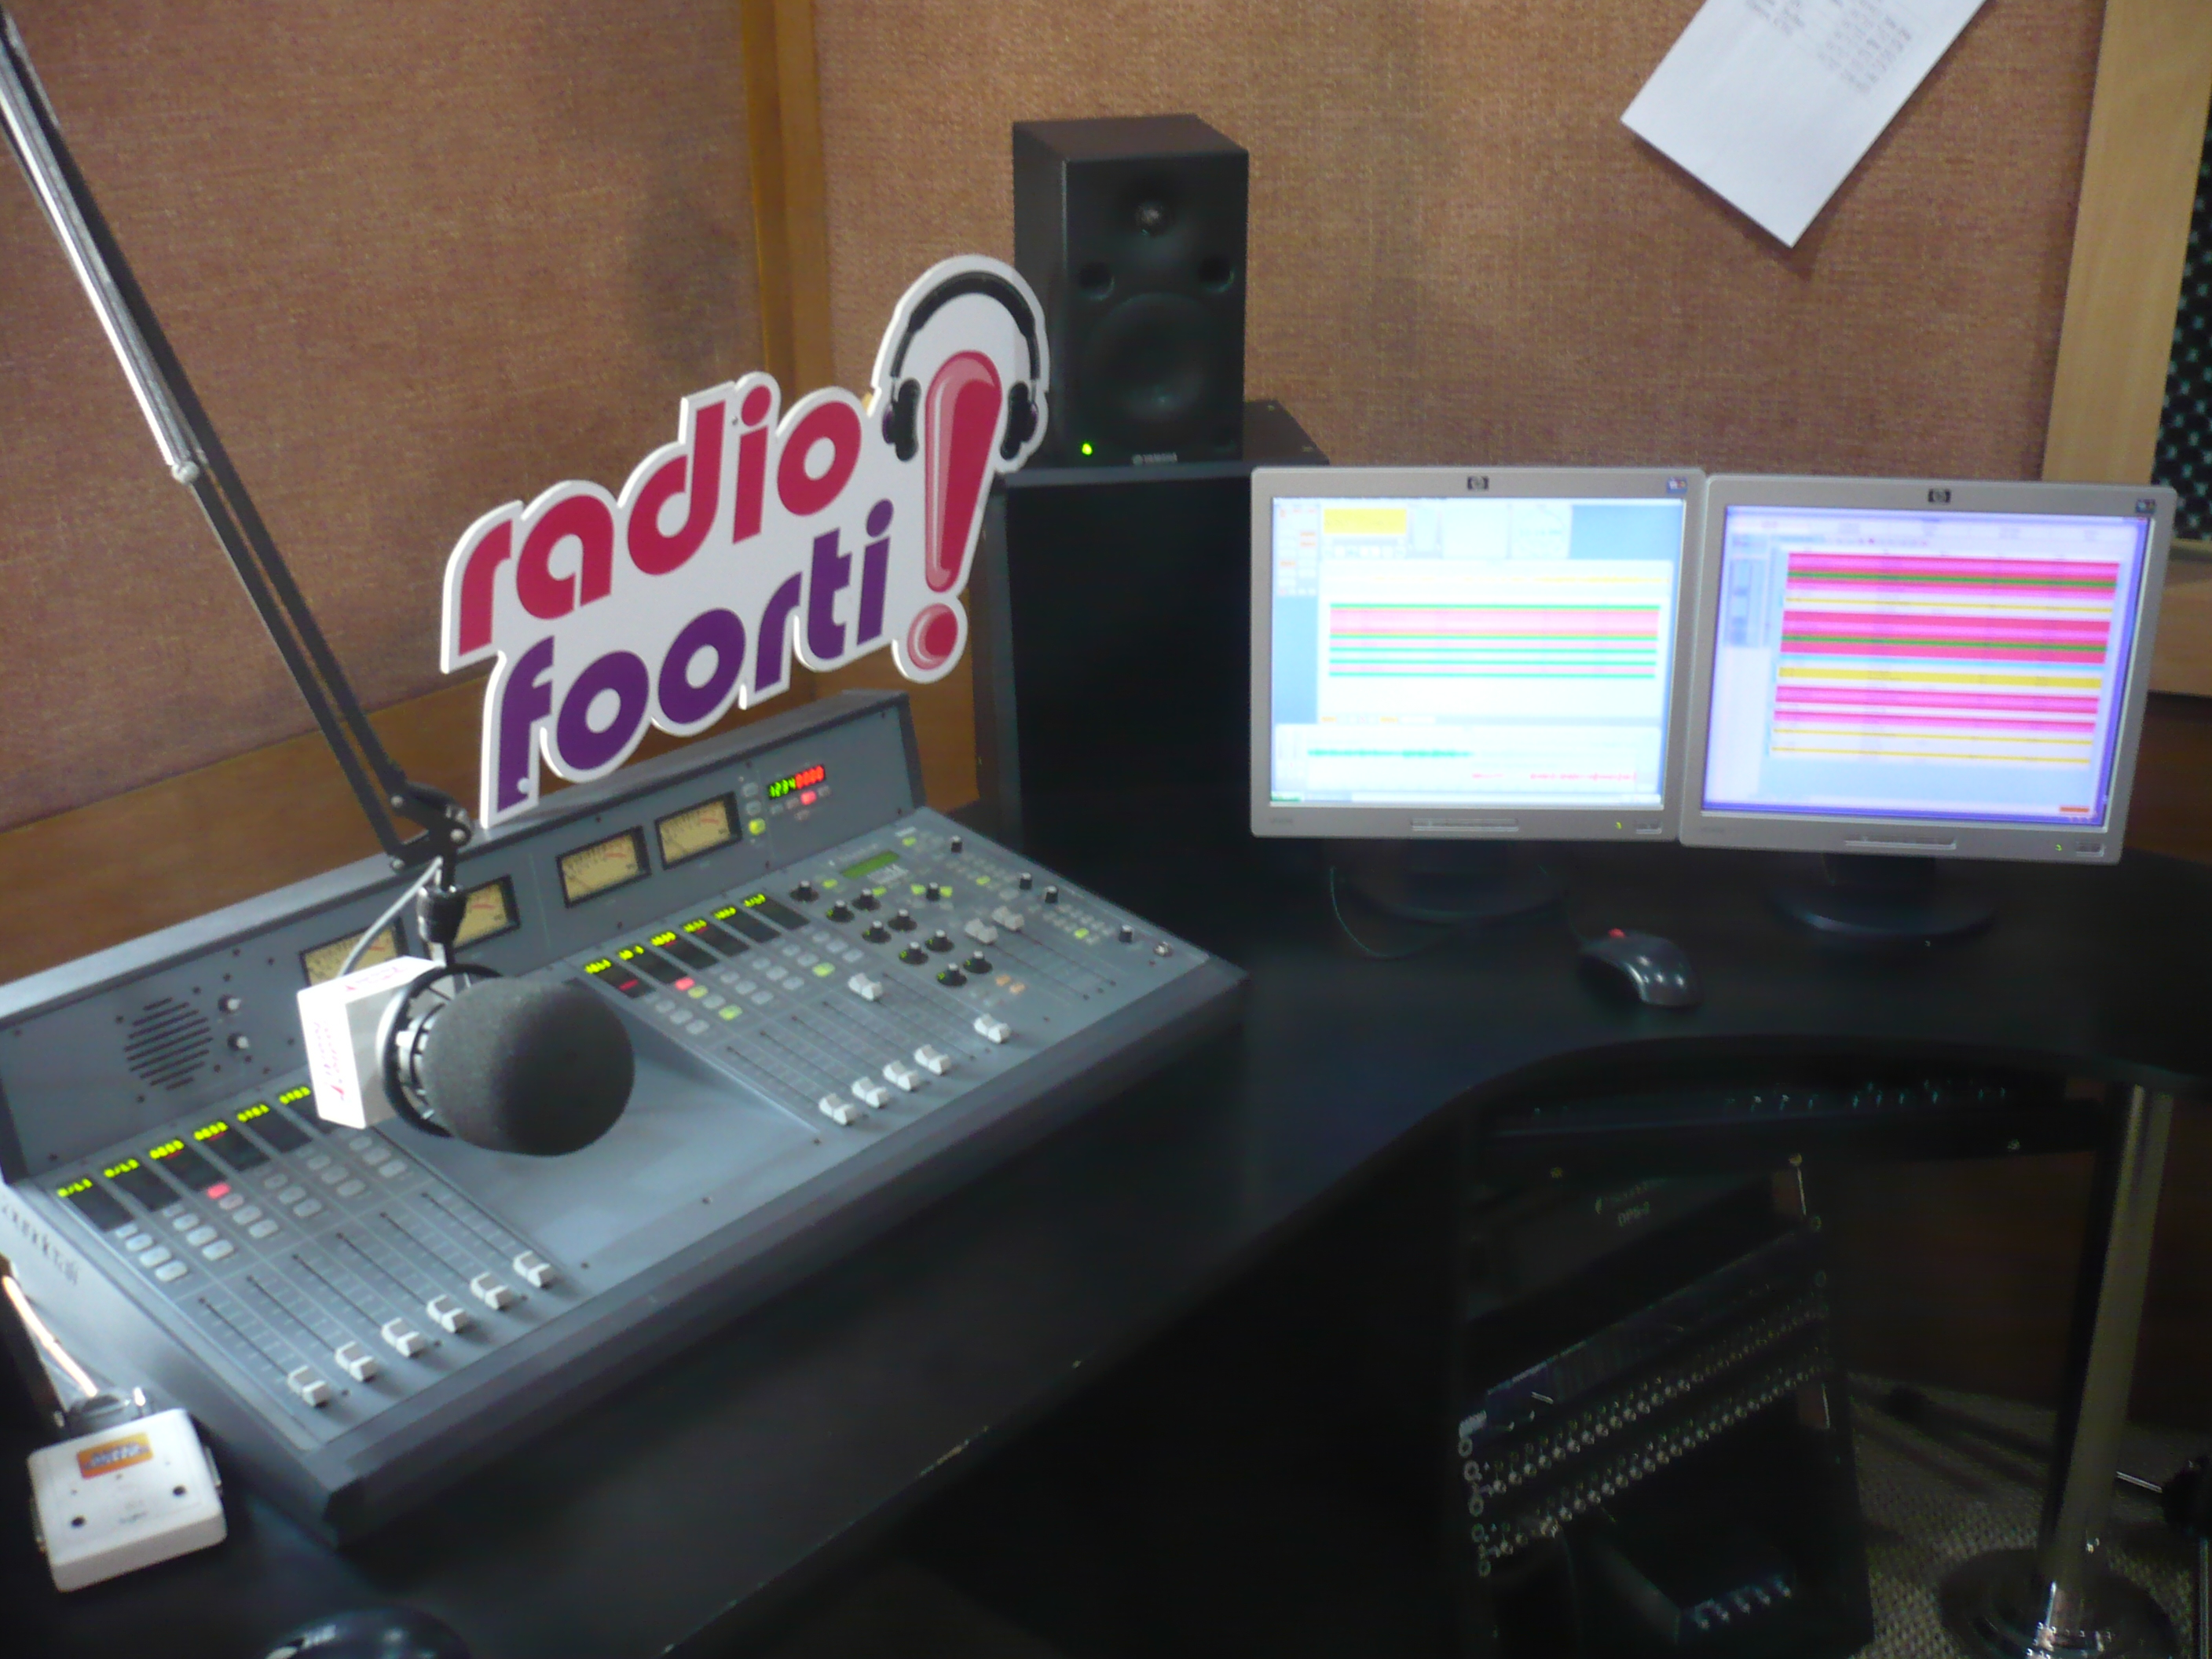 Radio Foorti, une station de radio qui offre la plus grande couverture au Bangladesh, a installé WinMedia Radio dans ses bureaux nationaux de Dhaka